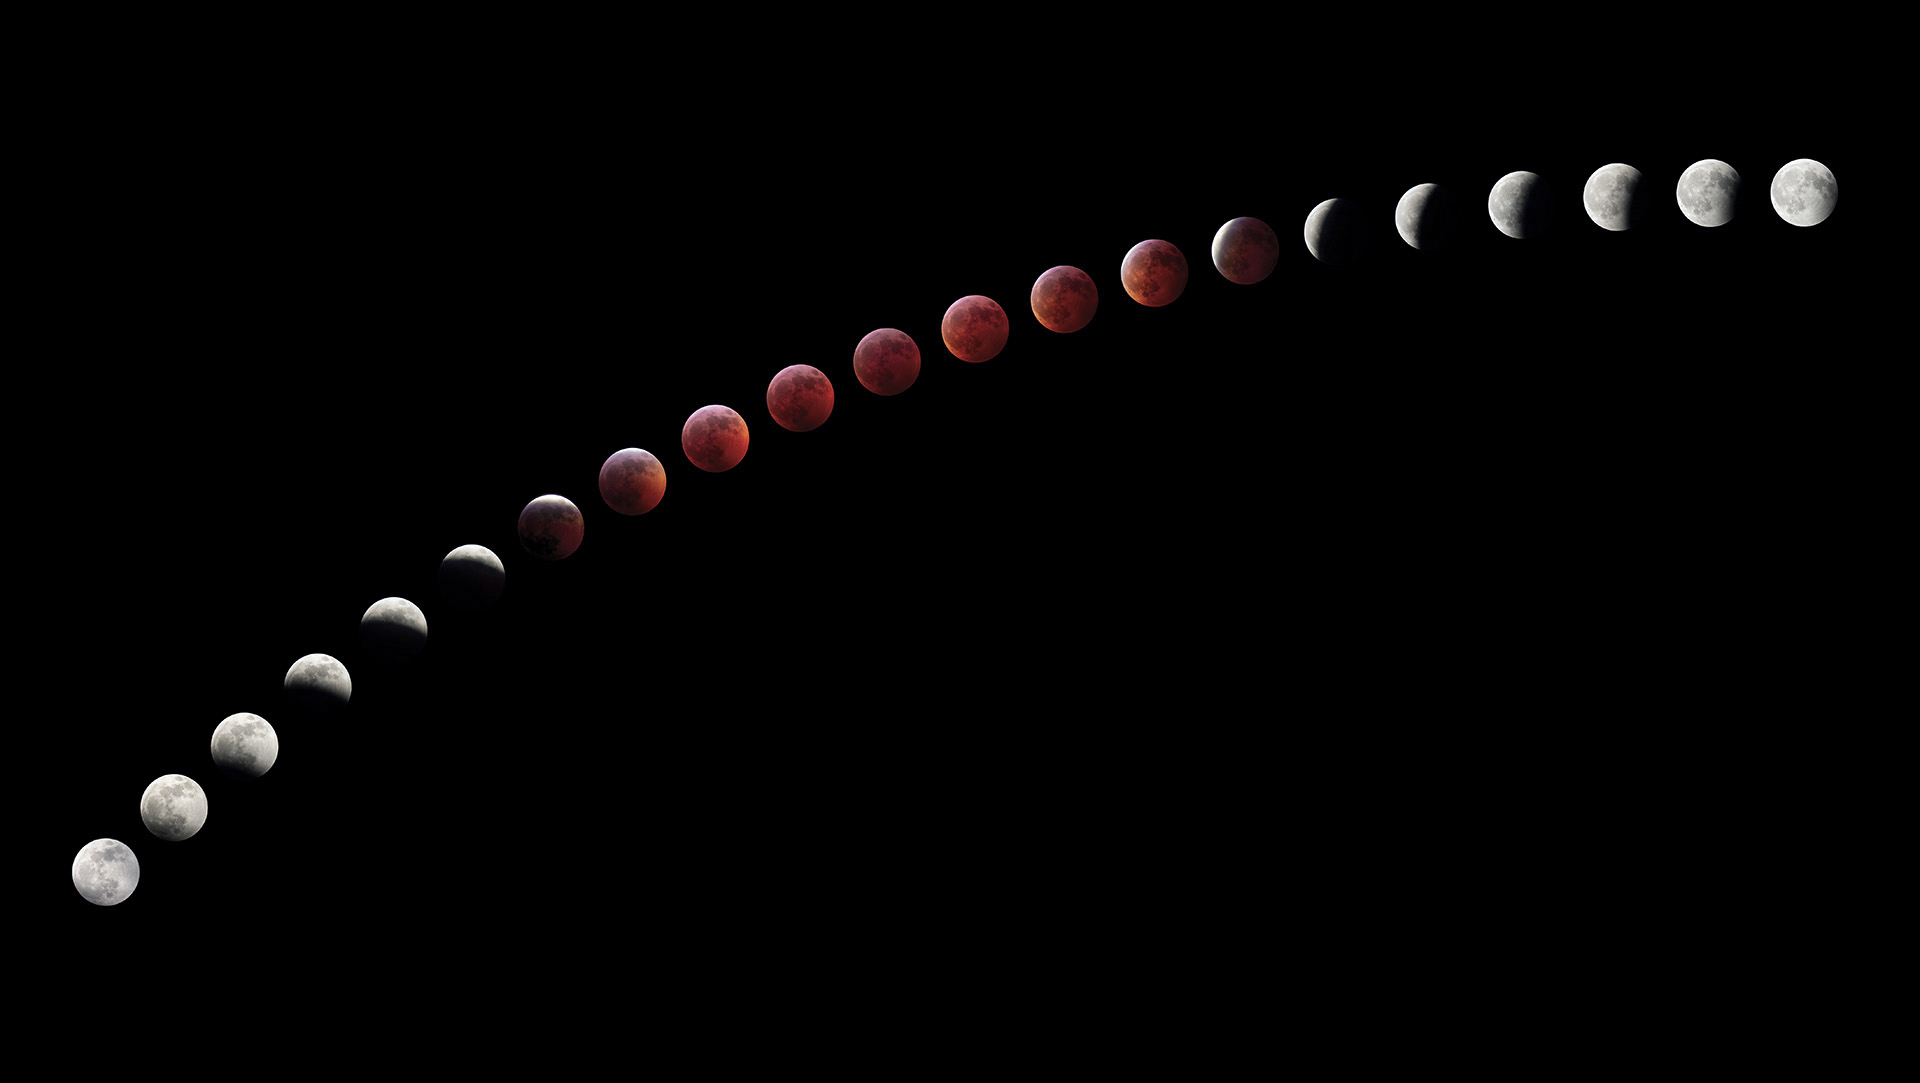 Total Lunar Eclipse - Composite by John Asztalos 